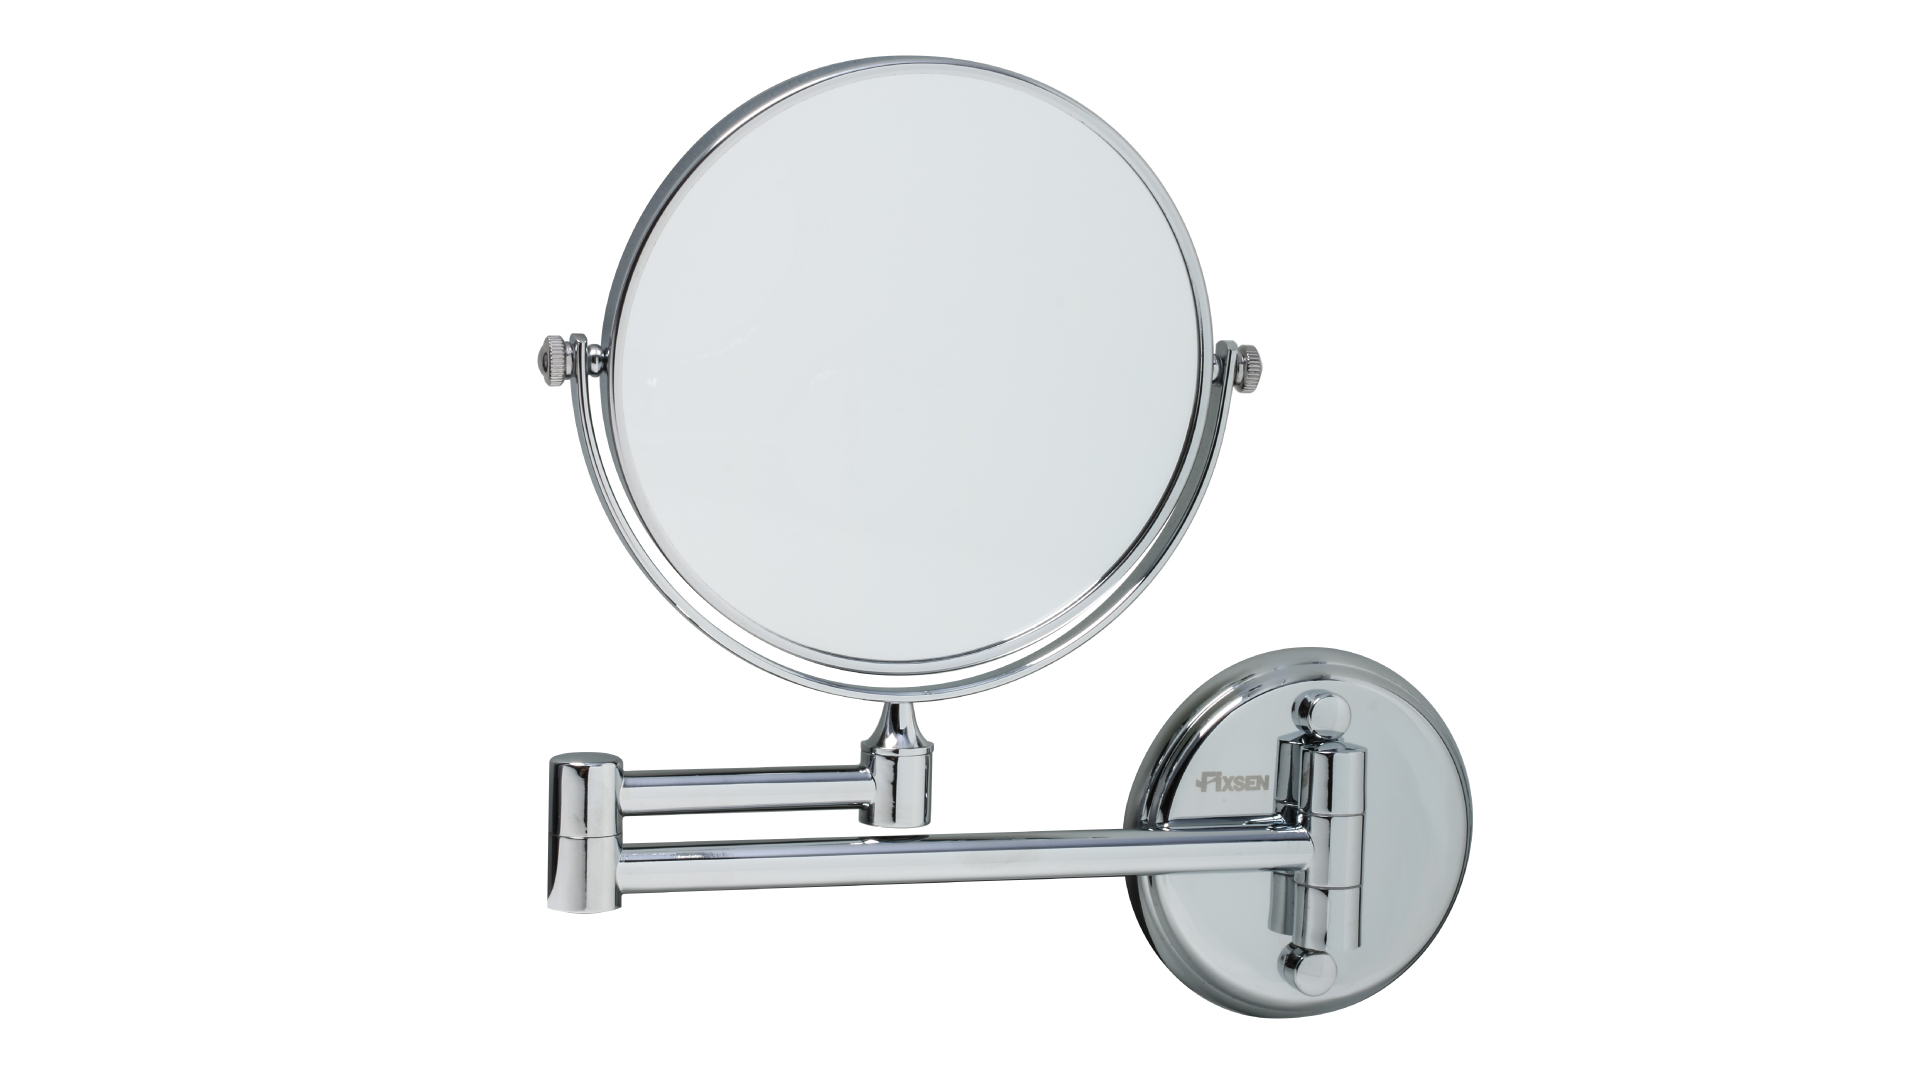 Косметическое зеркало Fixsen Hotel FX-31021 косметическое мыло банная забава